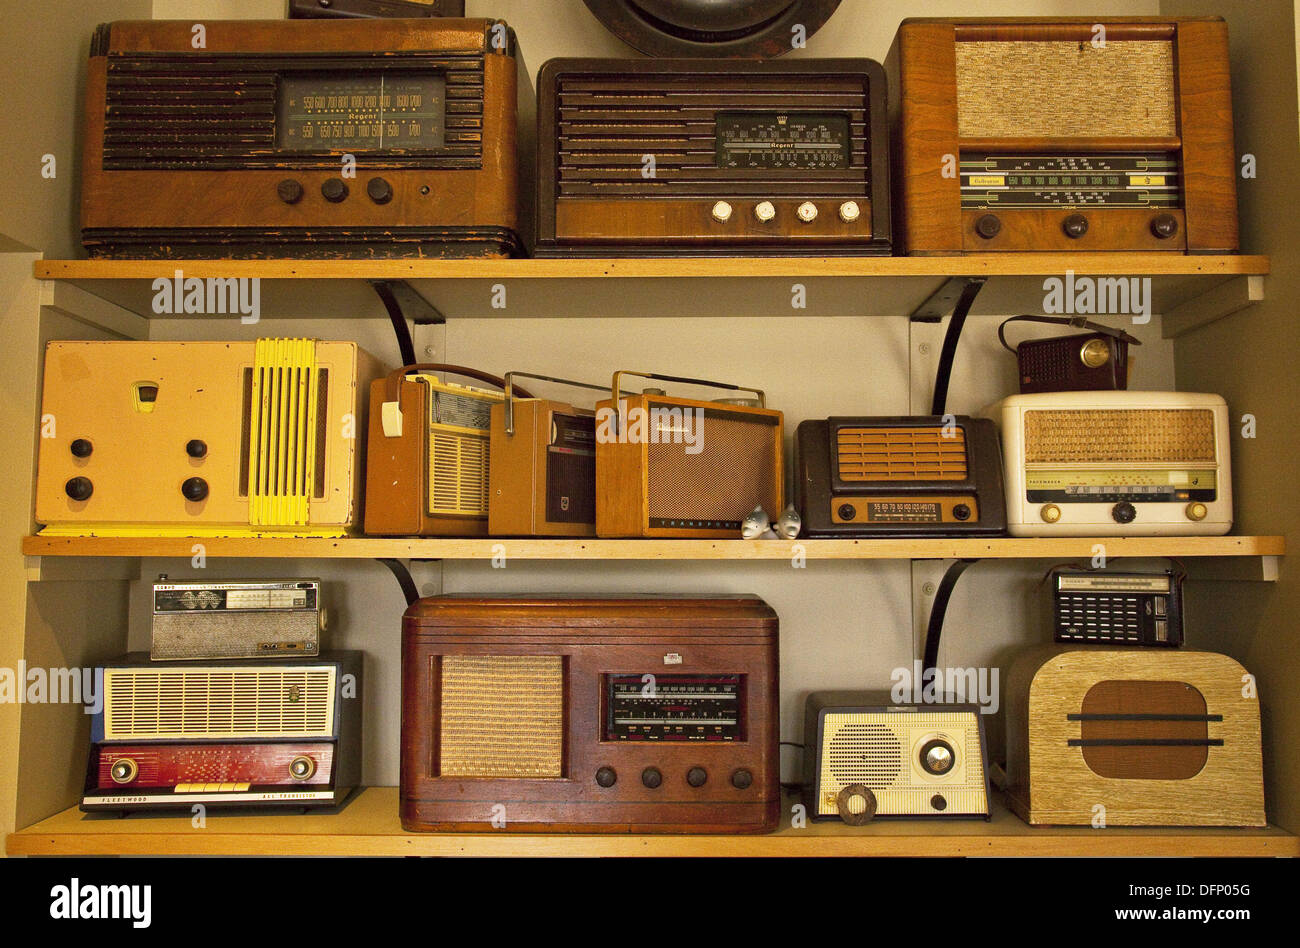 Radio collection Banque de photographies et d'images à haute résolution -  Alamy